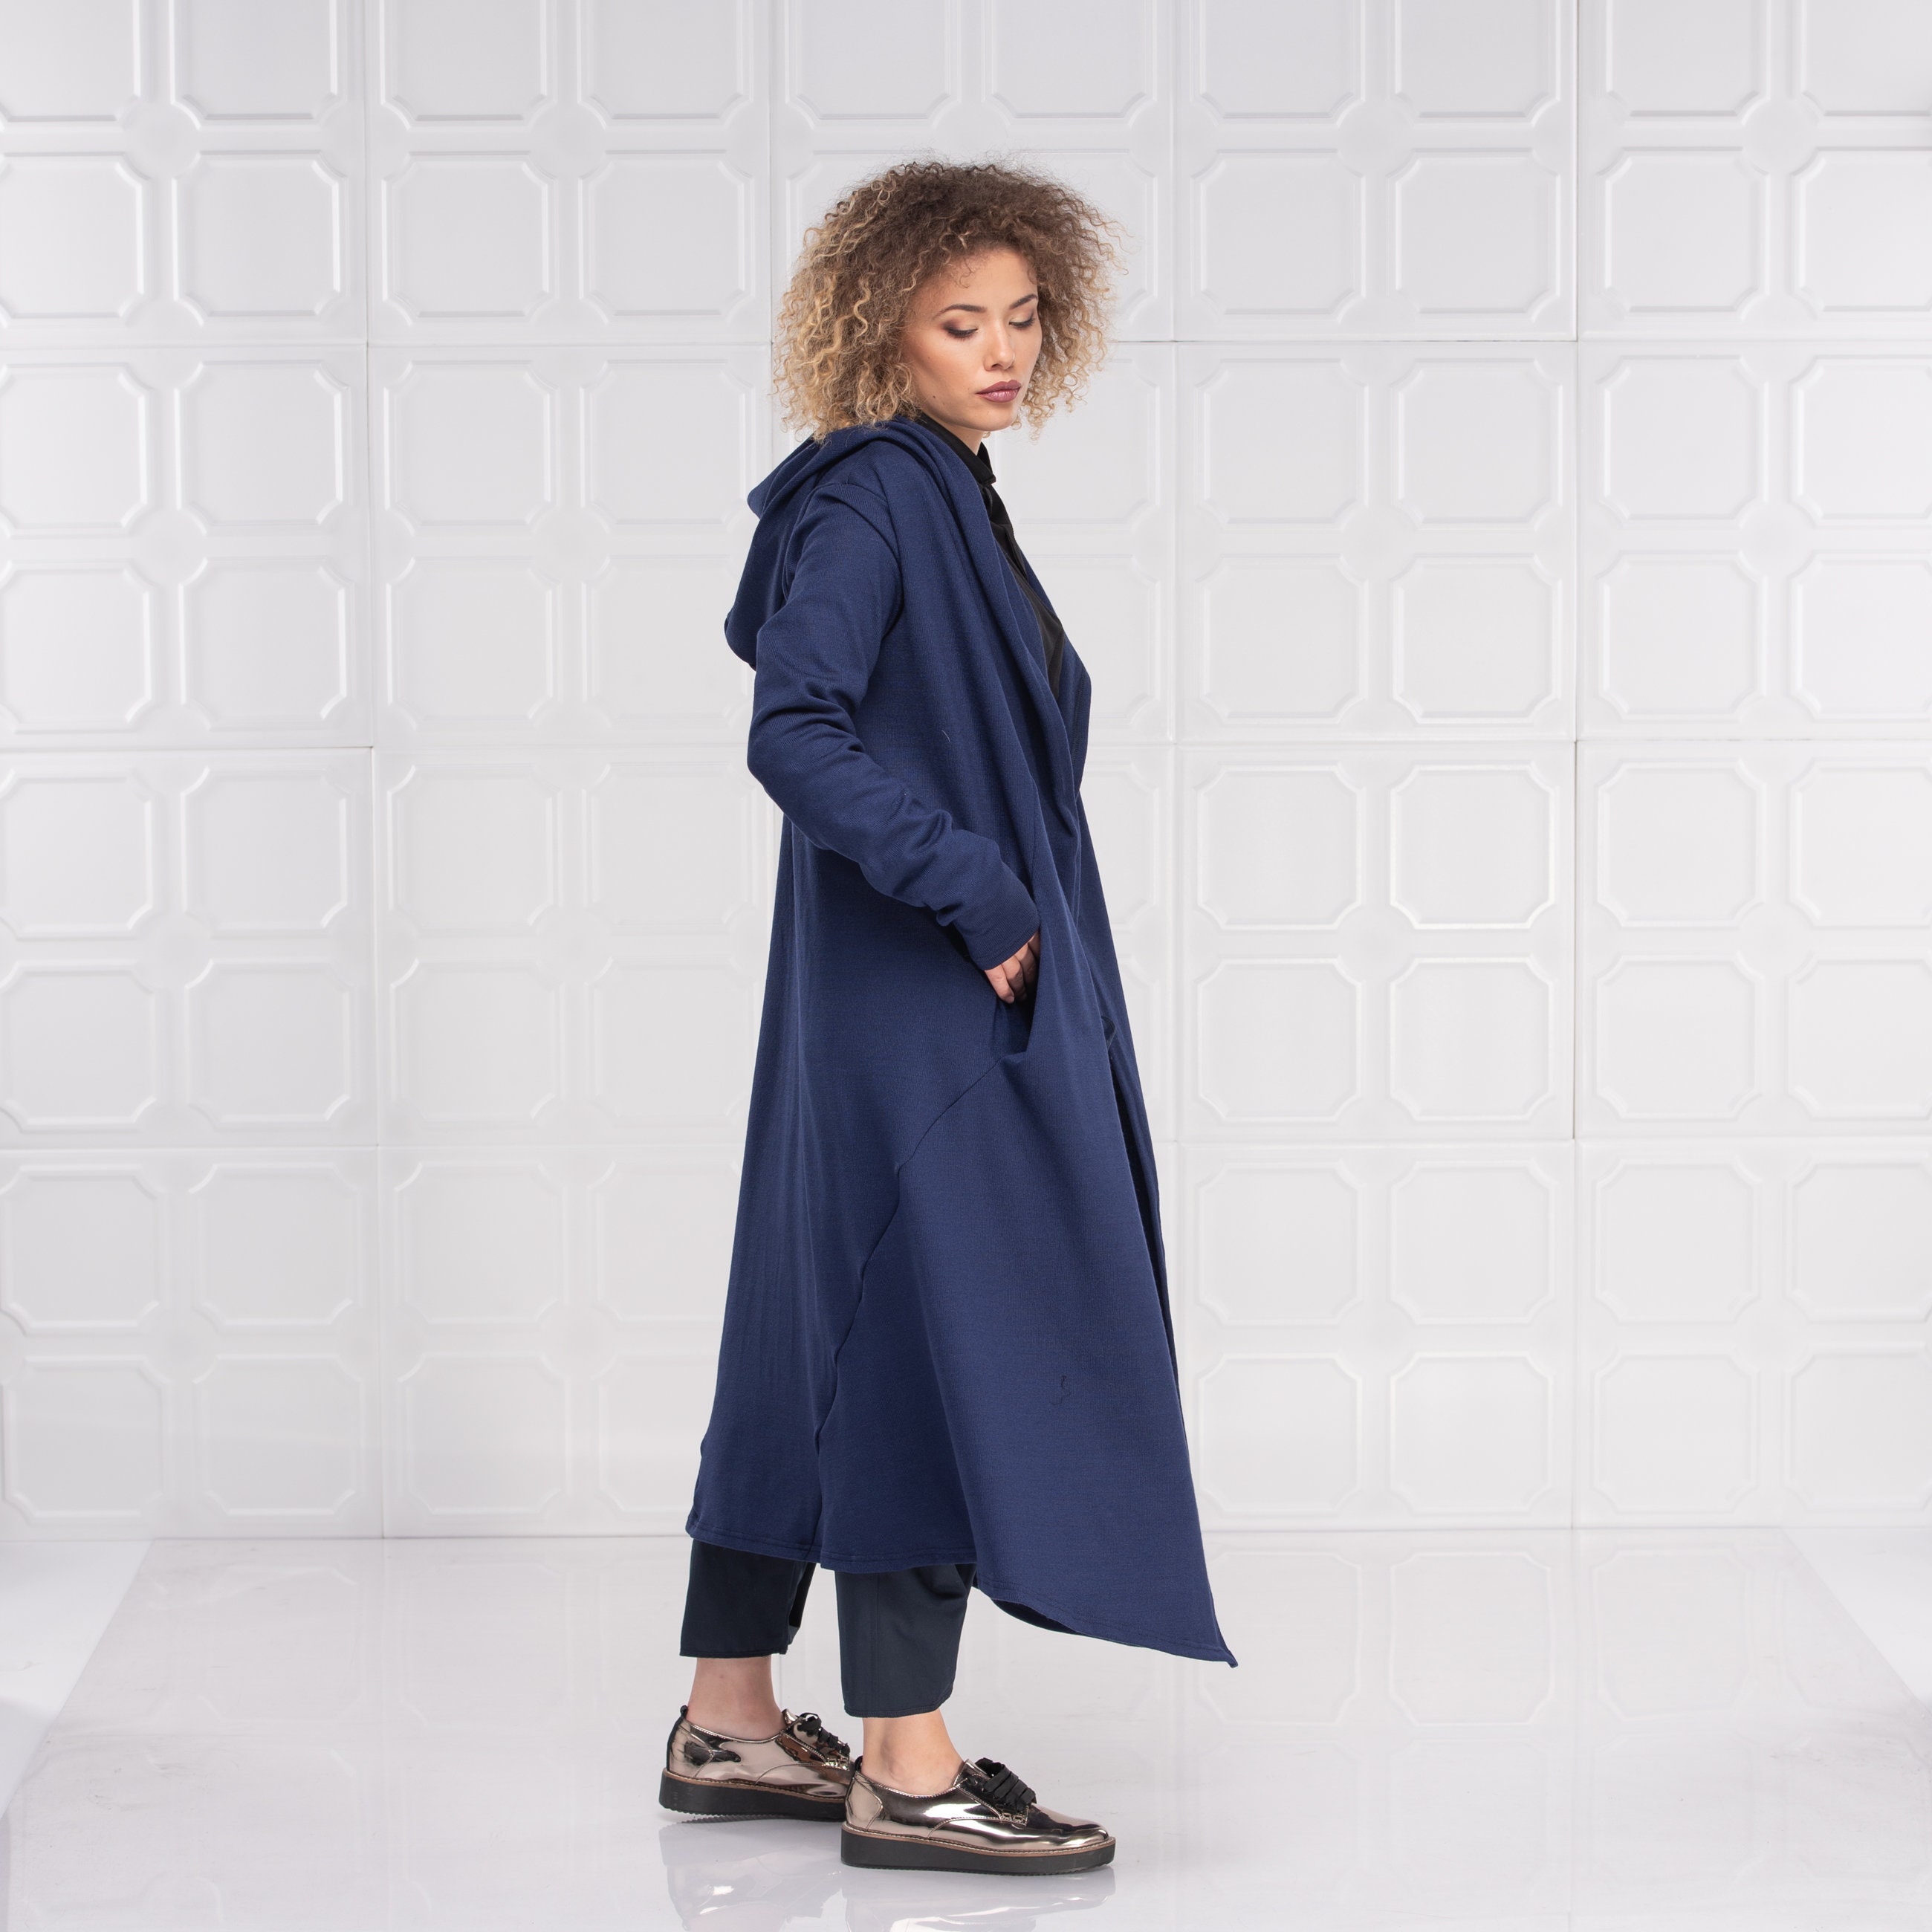 Wool Cloak Hooded Wool Coat Kimono Cardigan Wool Hoodie | Etsy